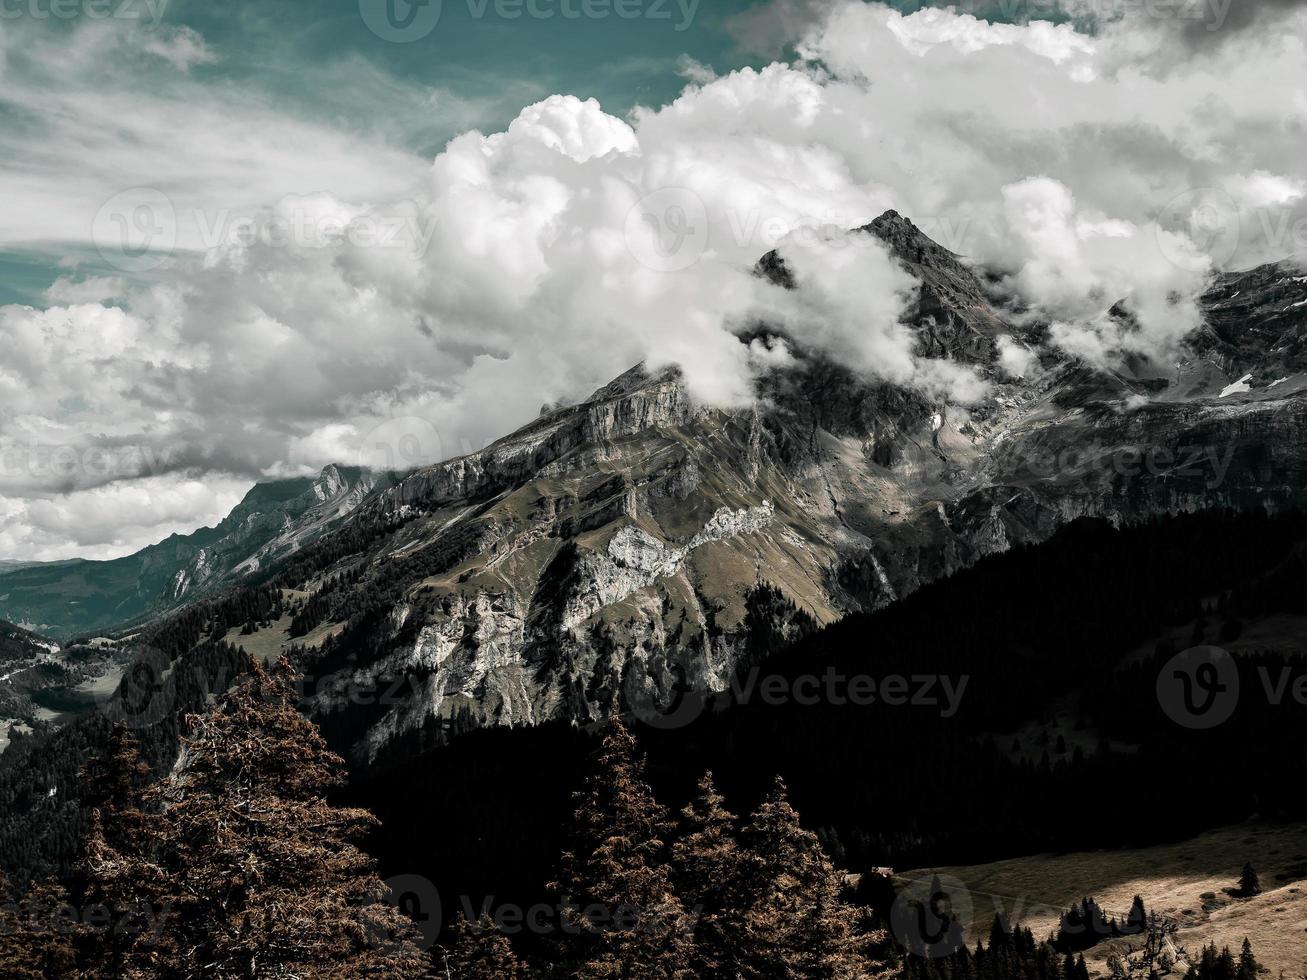 schreckliche leblose Felsen, ein Gletscher in den Alpen, Wolken und Nebel breiteten sich über den Gipfeln der Berge aus foto